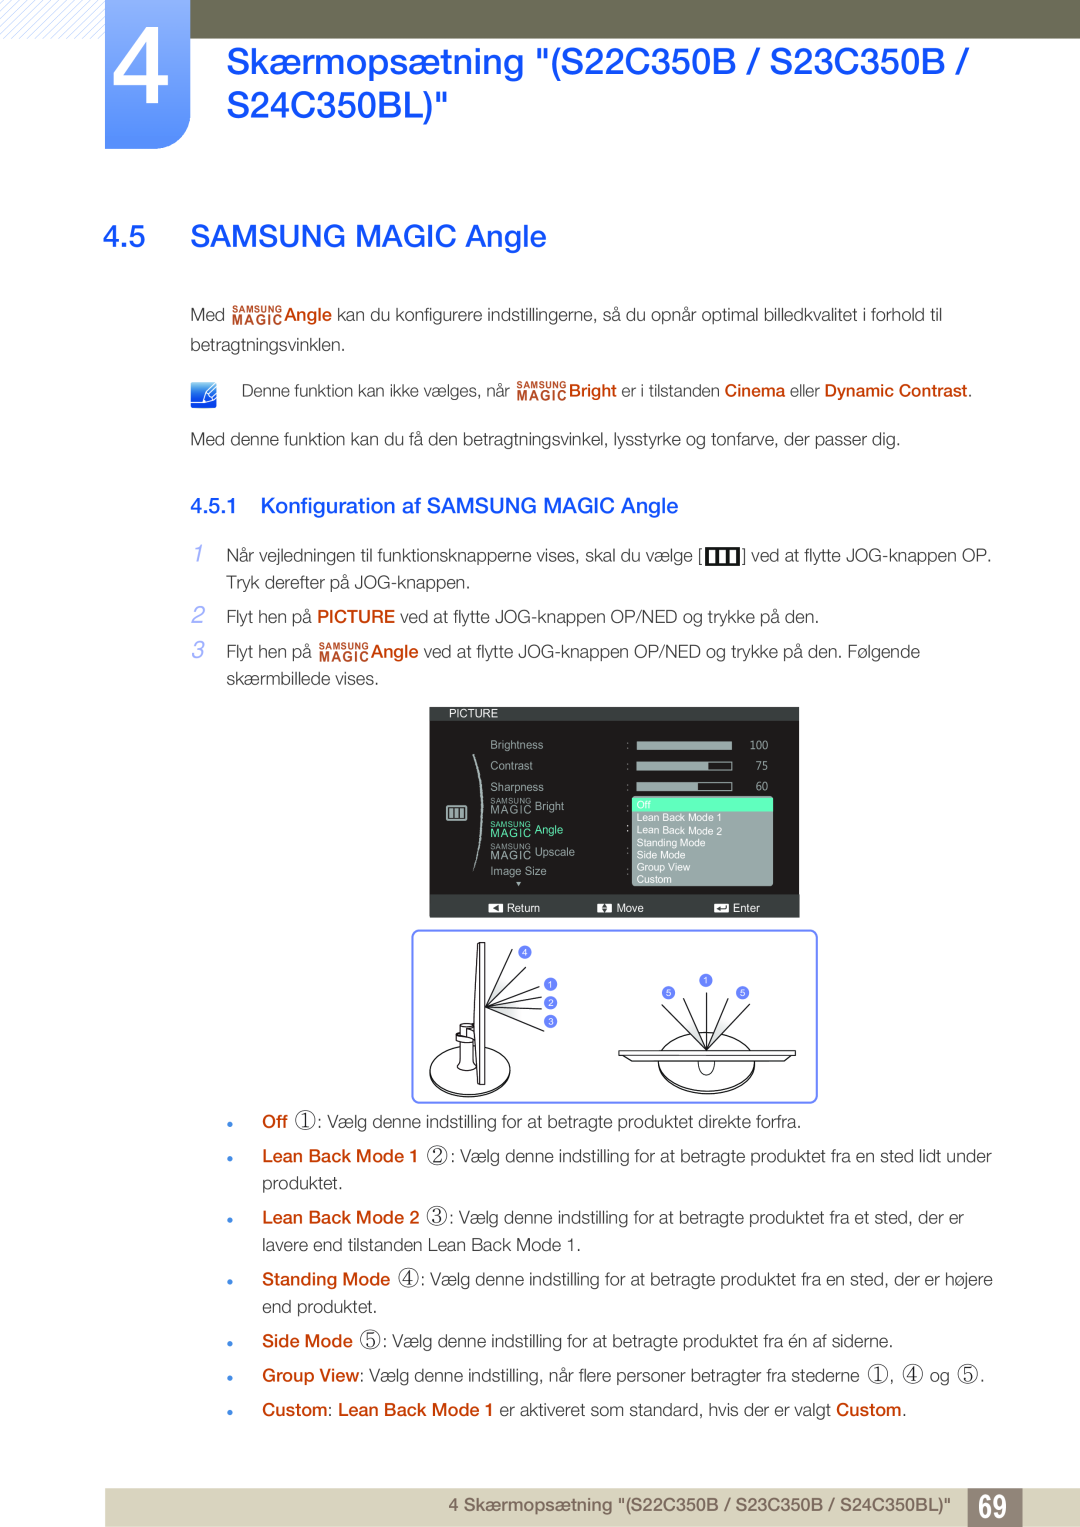 Samsung LS24C350HS/EN manual Konfiguration af SAMSUNG MAGIC Angle, 4 SkærmopsætningS24C350BL S22C350B / S23C350B 